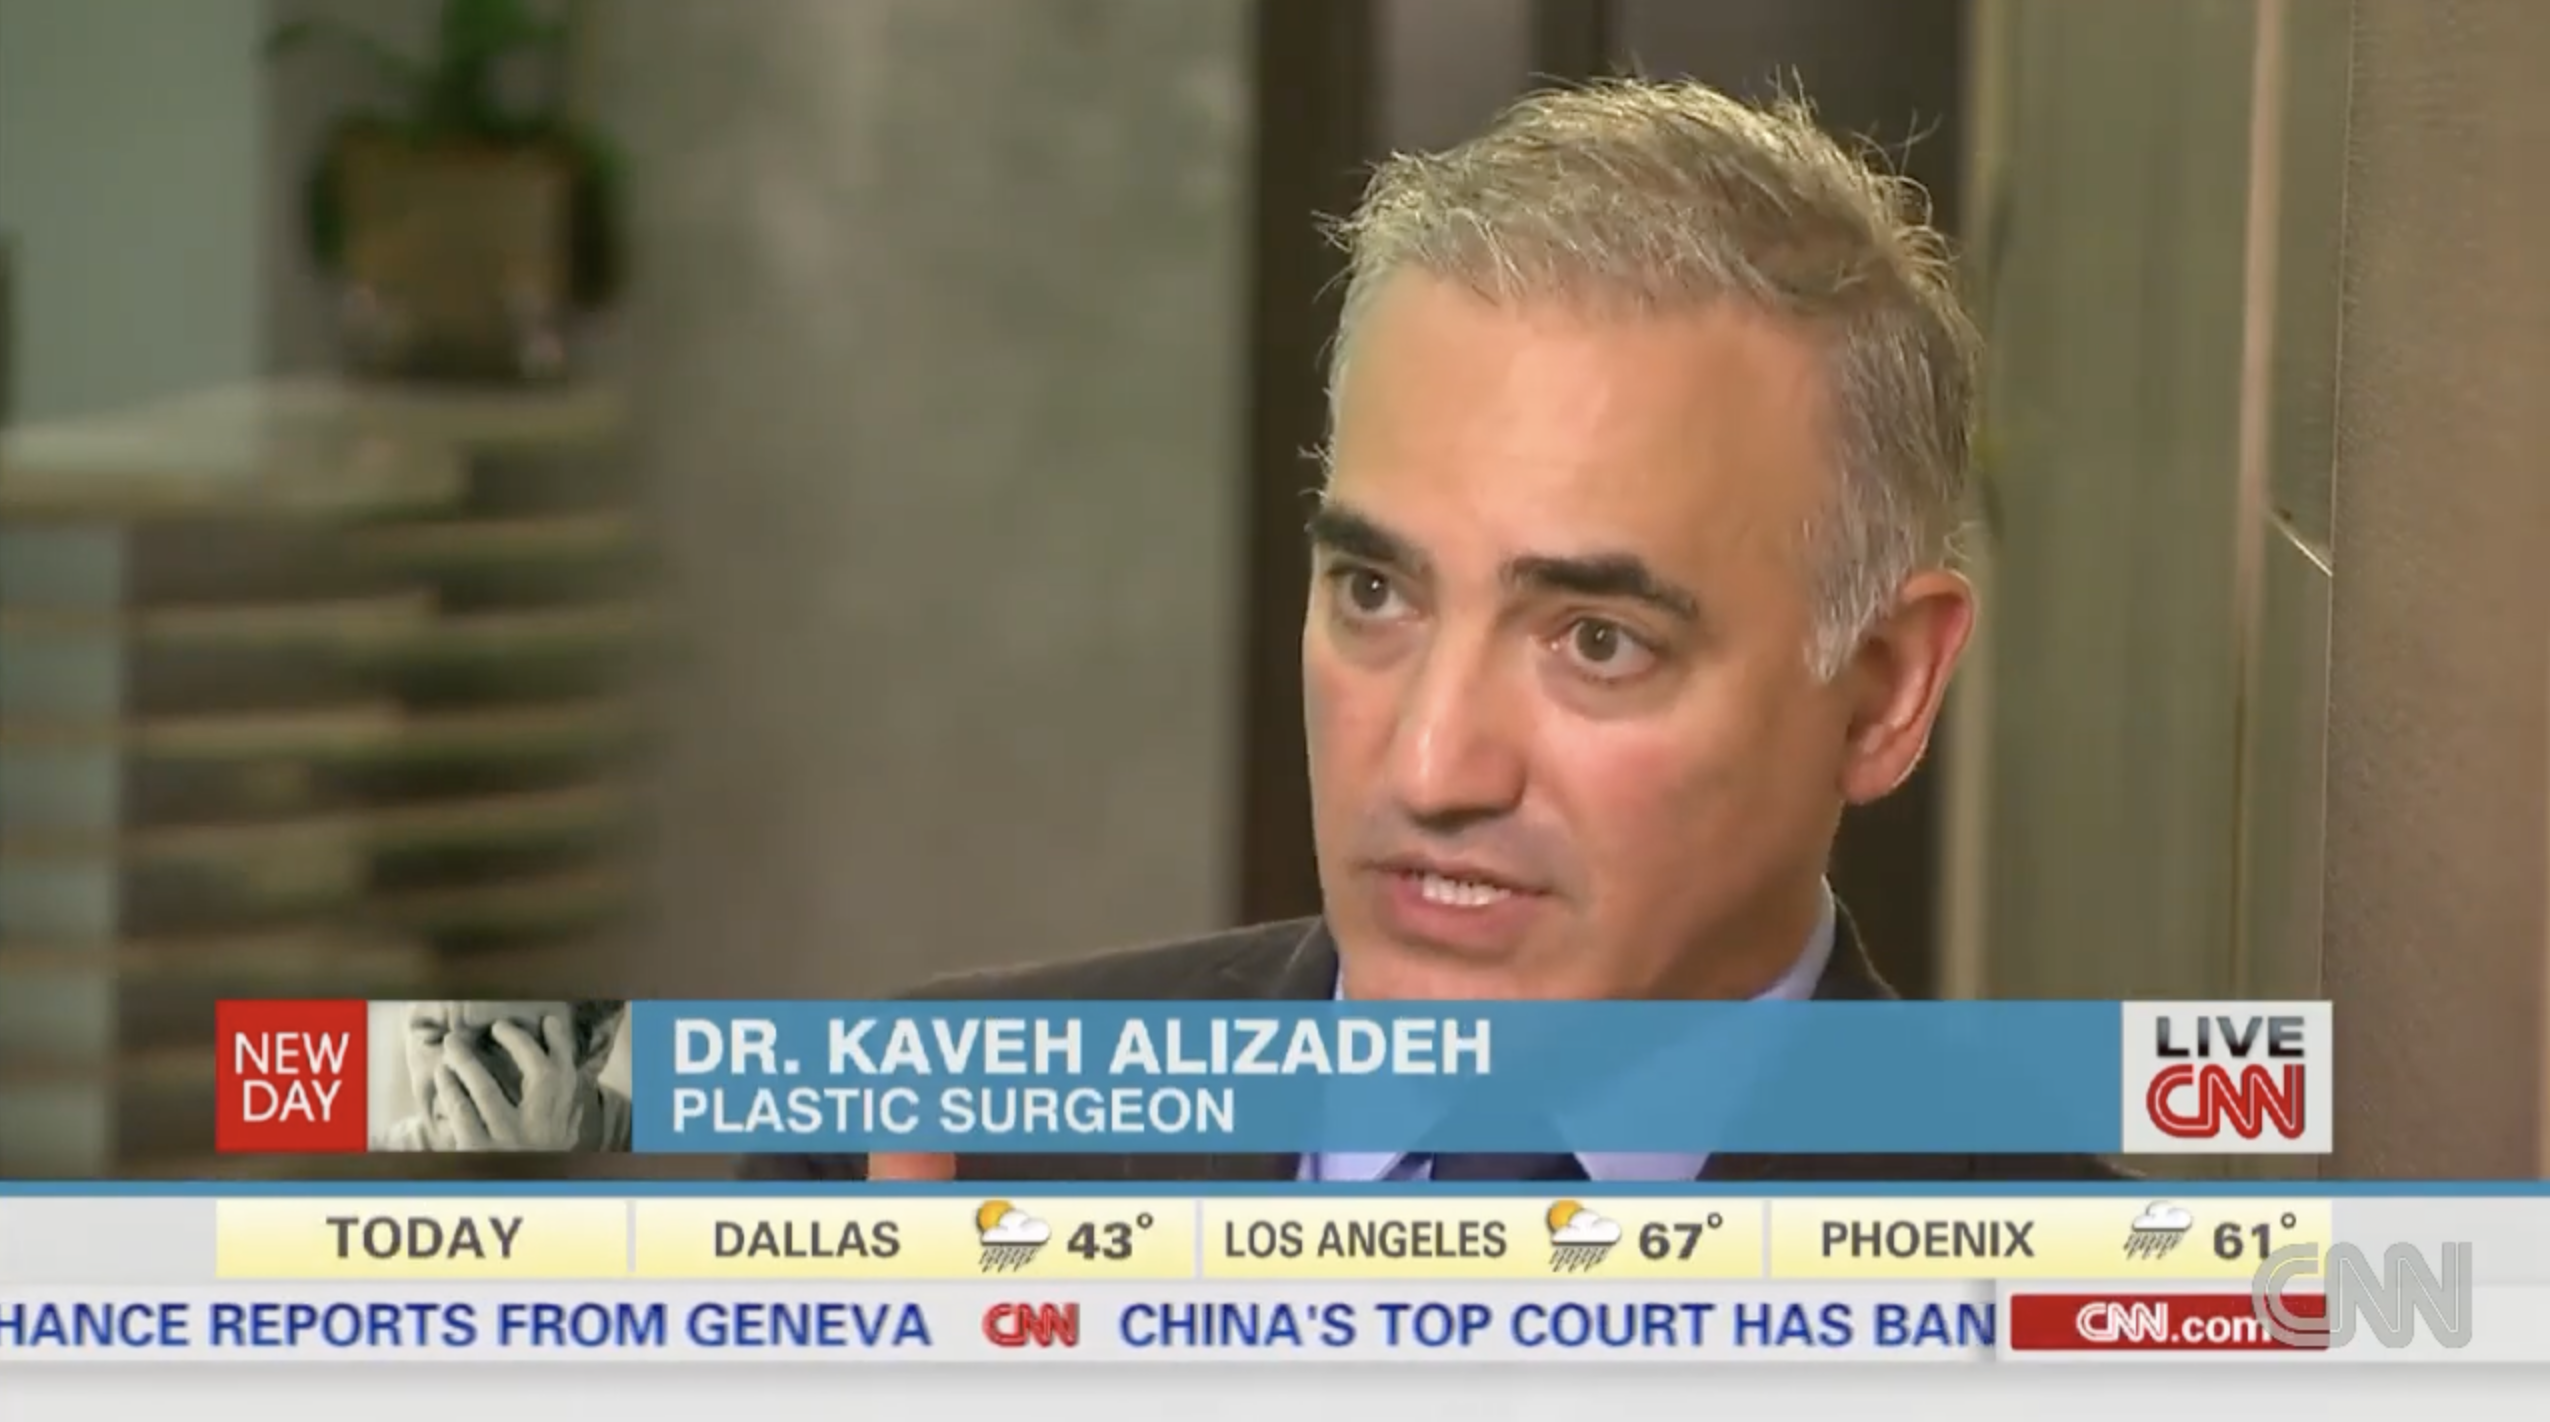 Dr. Alizadeh speaking on CNN.